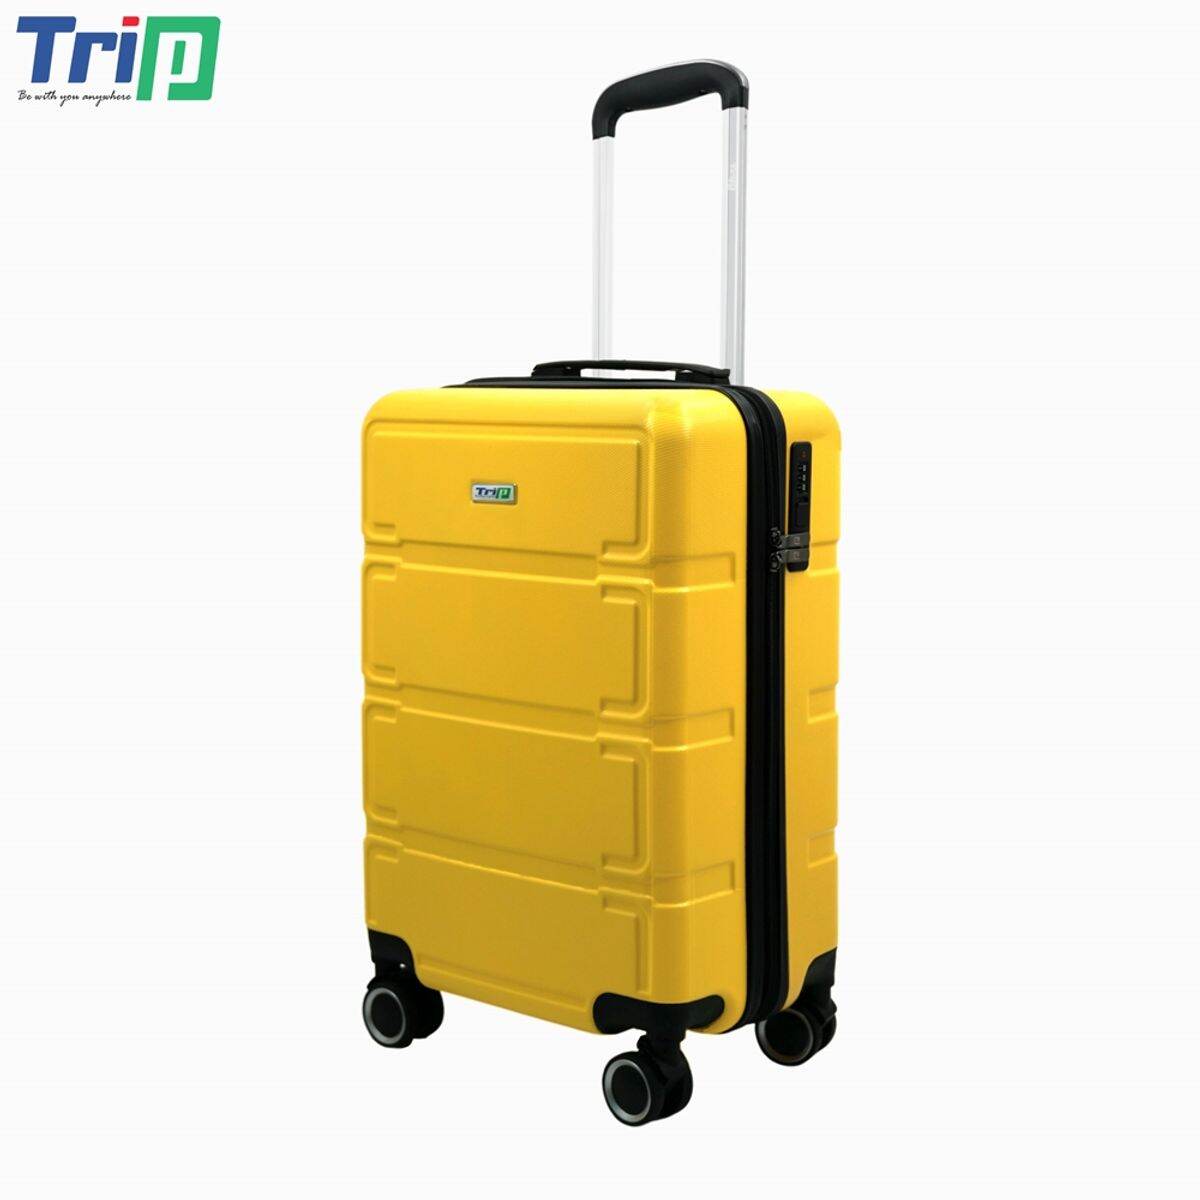 Vali nhựa cao cấp TRIP P806 (50 x 35 cm) chống trầy xước, bánh xe di chuyển nhẹ và êm ái, có khóa chống trộm